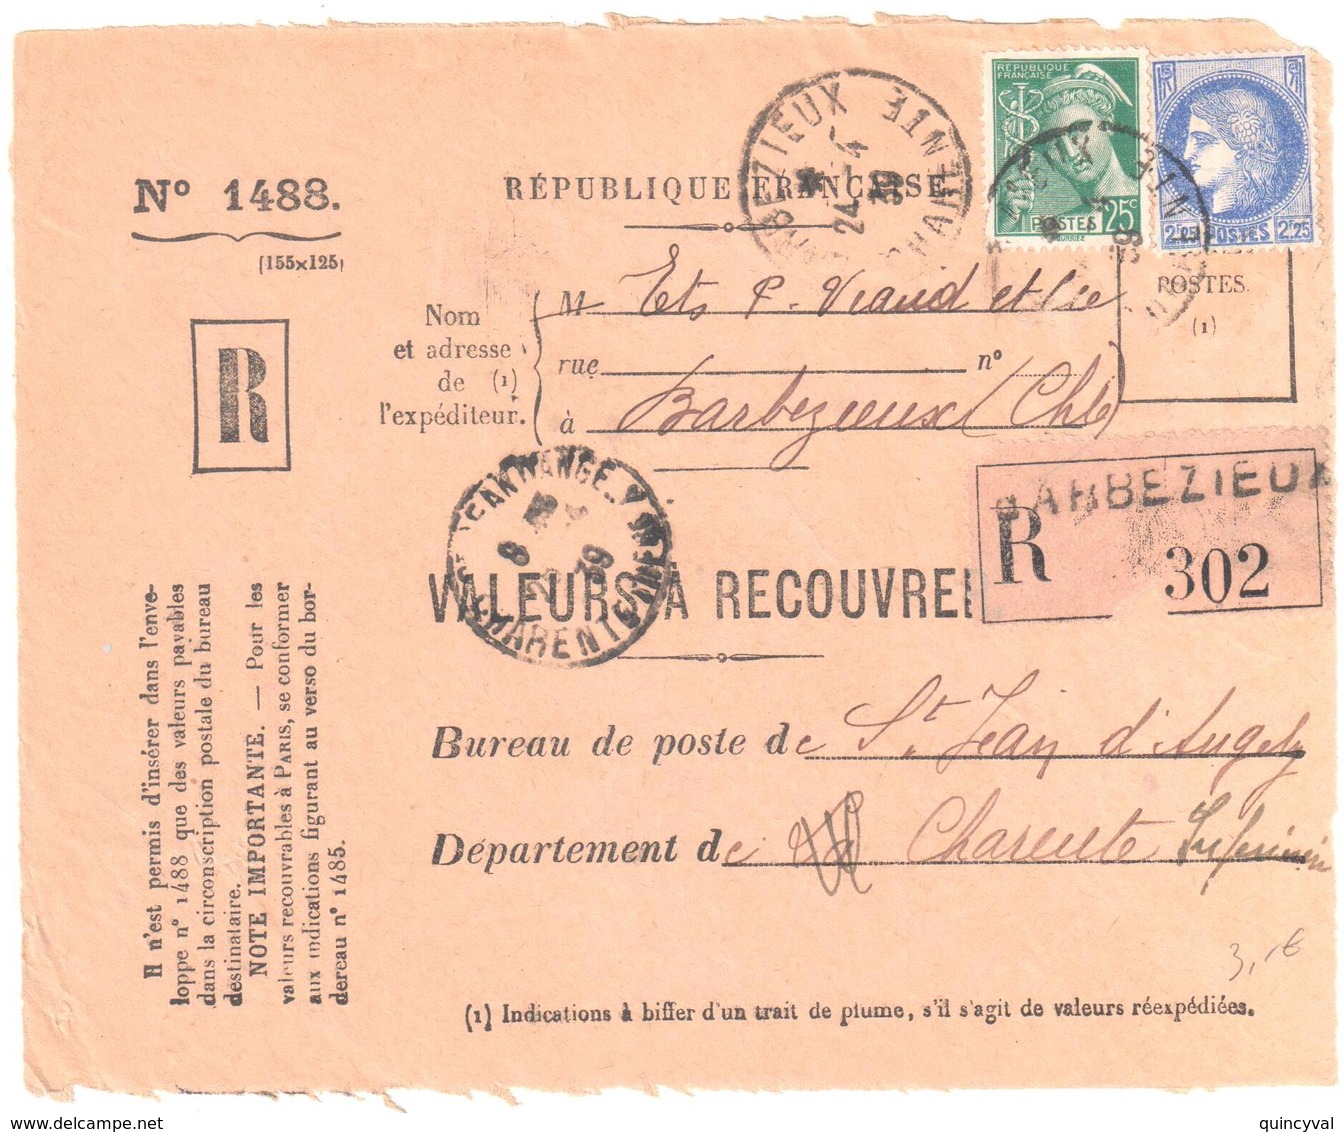 BARBEZIEUX Charente Inf Valeur à Recouvrer Reco 1488 2,25 F Cérés 25c Mercure 25c Yv 375 411 Ob 1939 - Briefe U. Dokumente